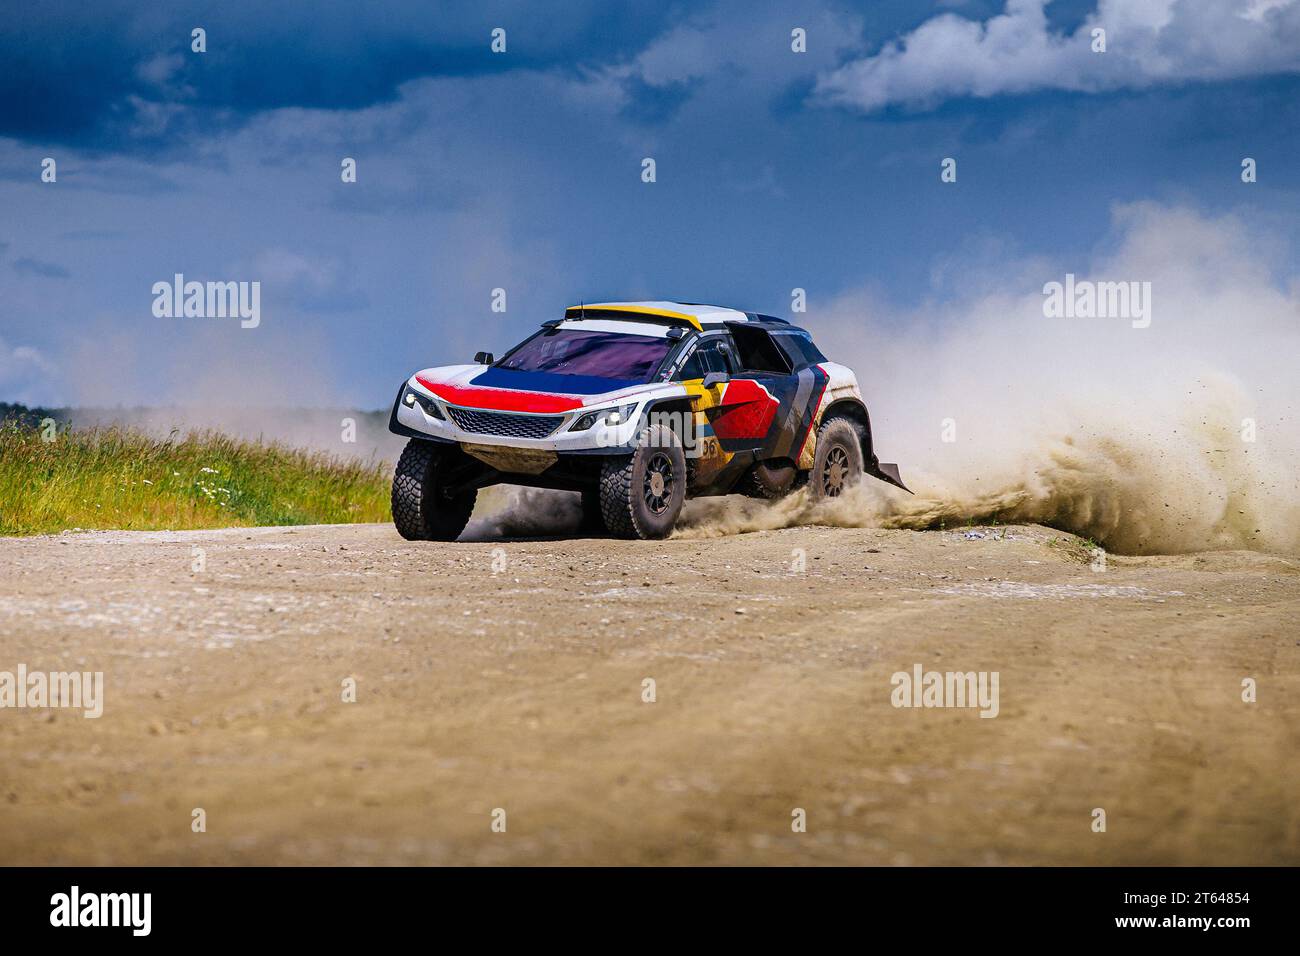 course automobile à grande vitesse roule sur route poussiéreuse pendant le rallye de cross-country Banque D'Images